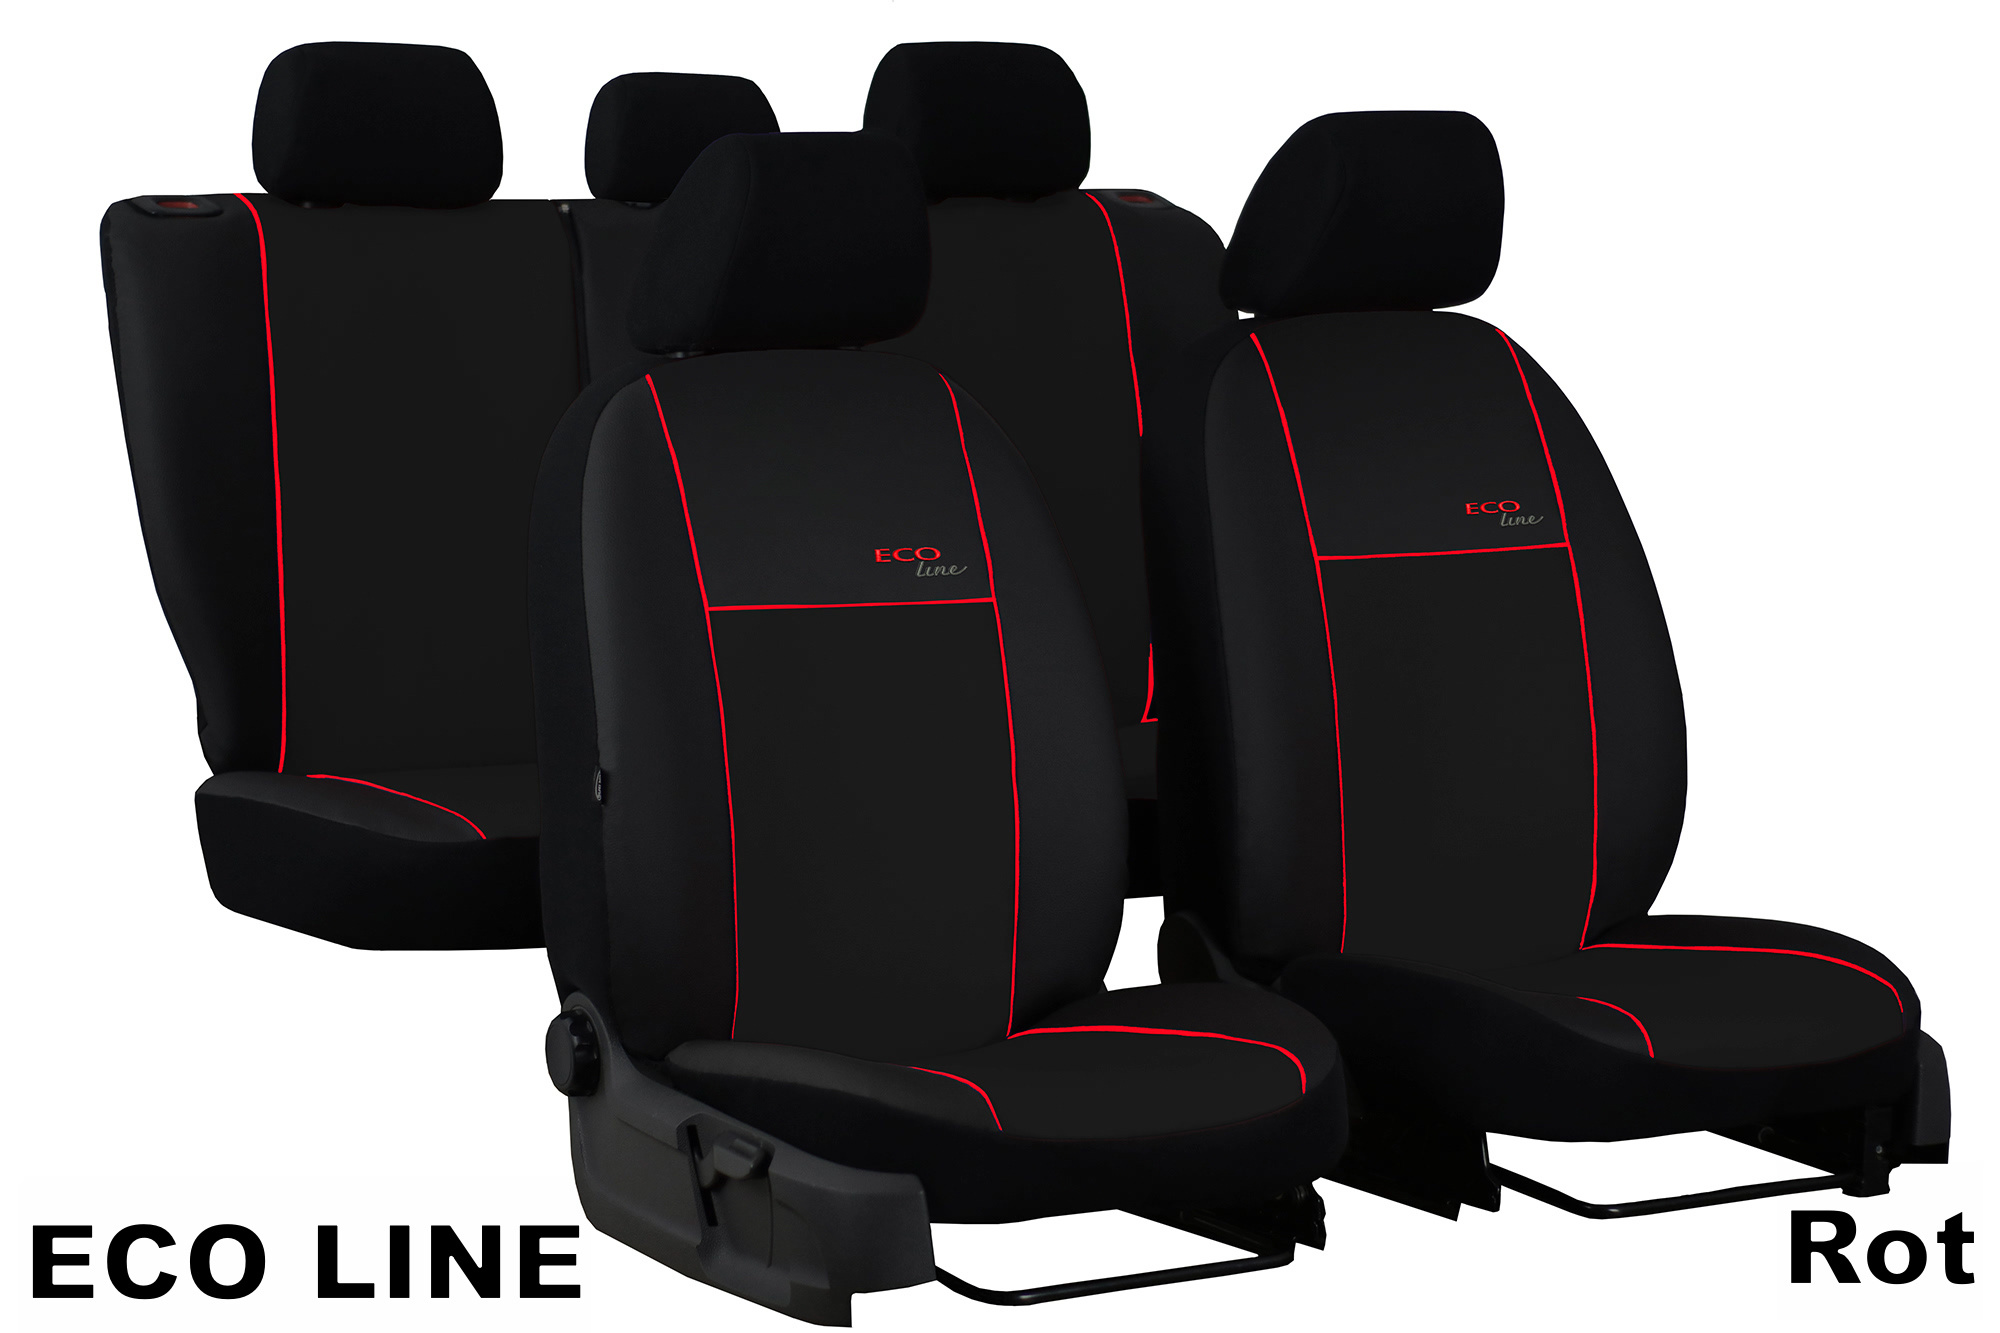 Maßgenauer Sitzbezug S-Type für Honda CRV - Maluch Premium Autozubehör